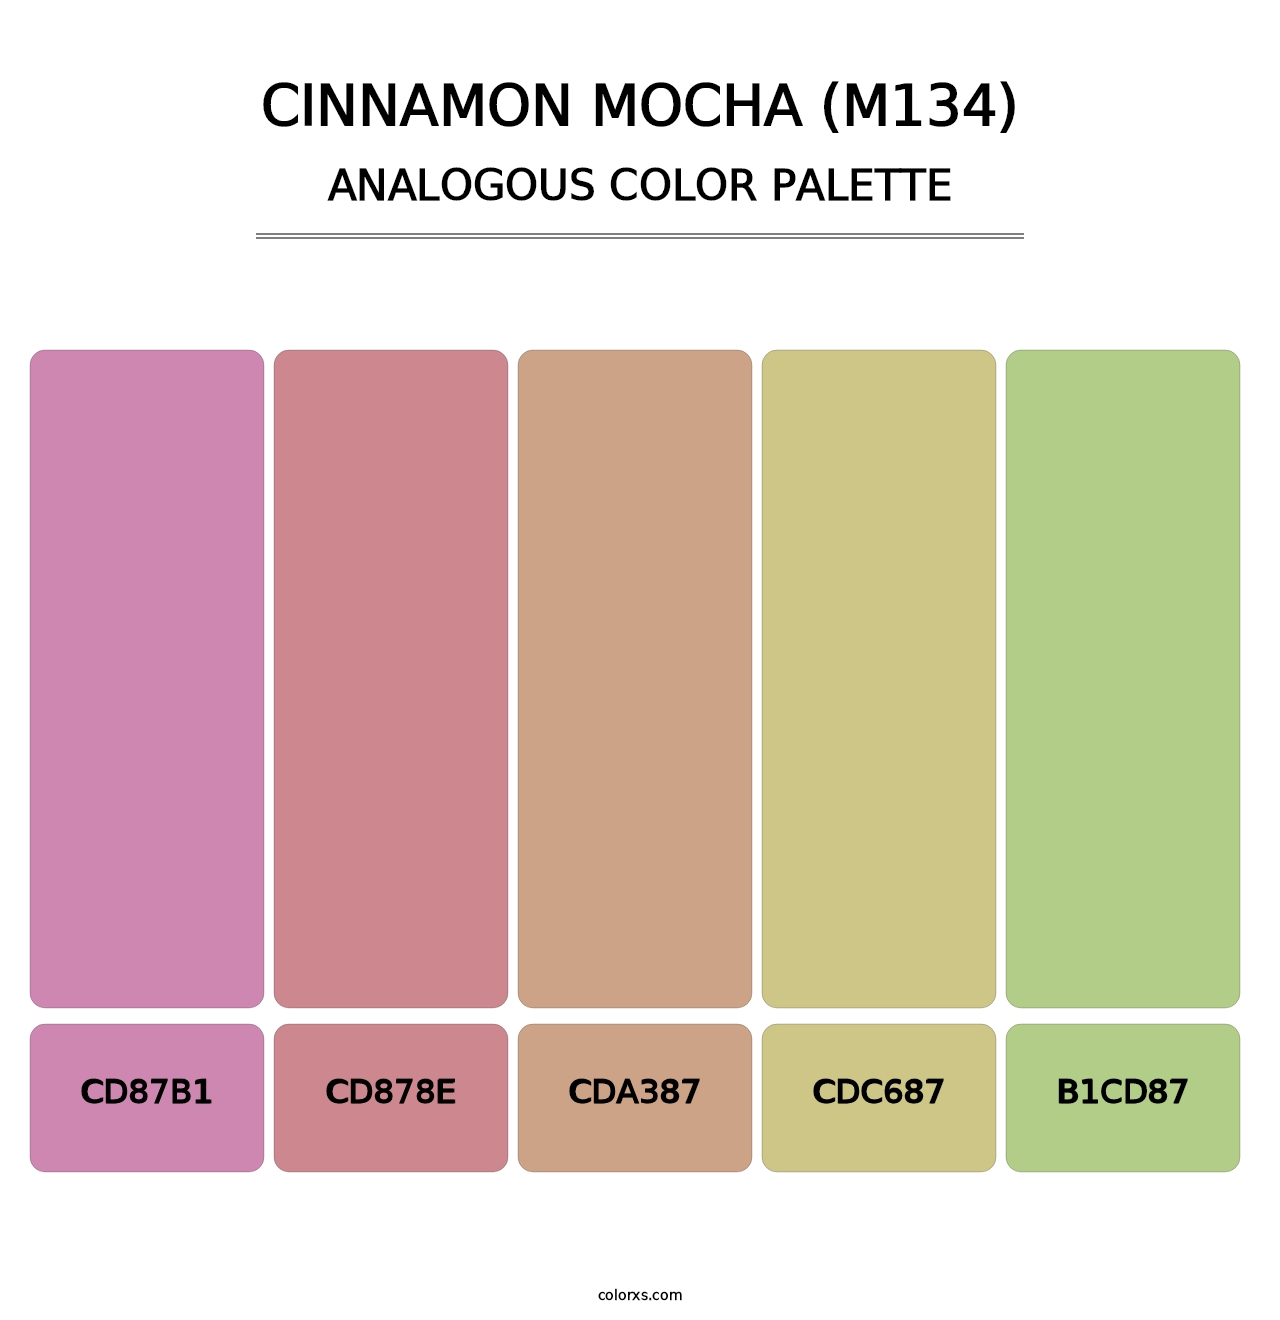 Cinnamon Mocha (M134) - Analogous Color Palette